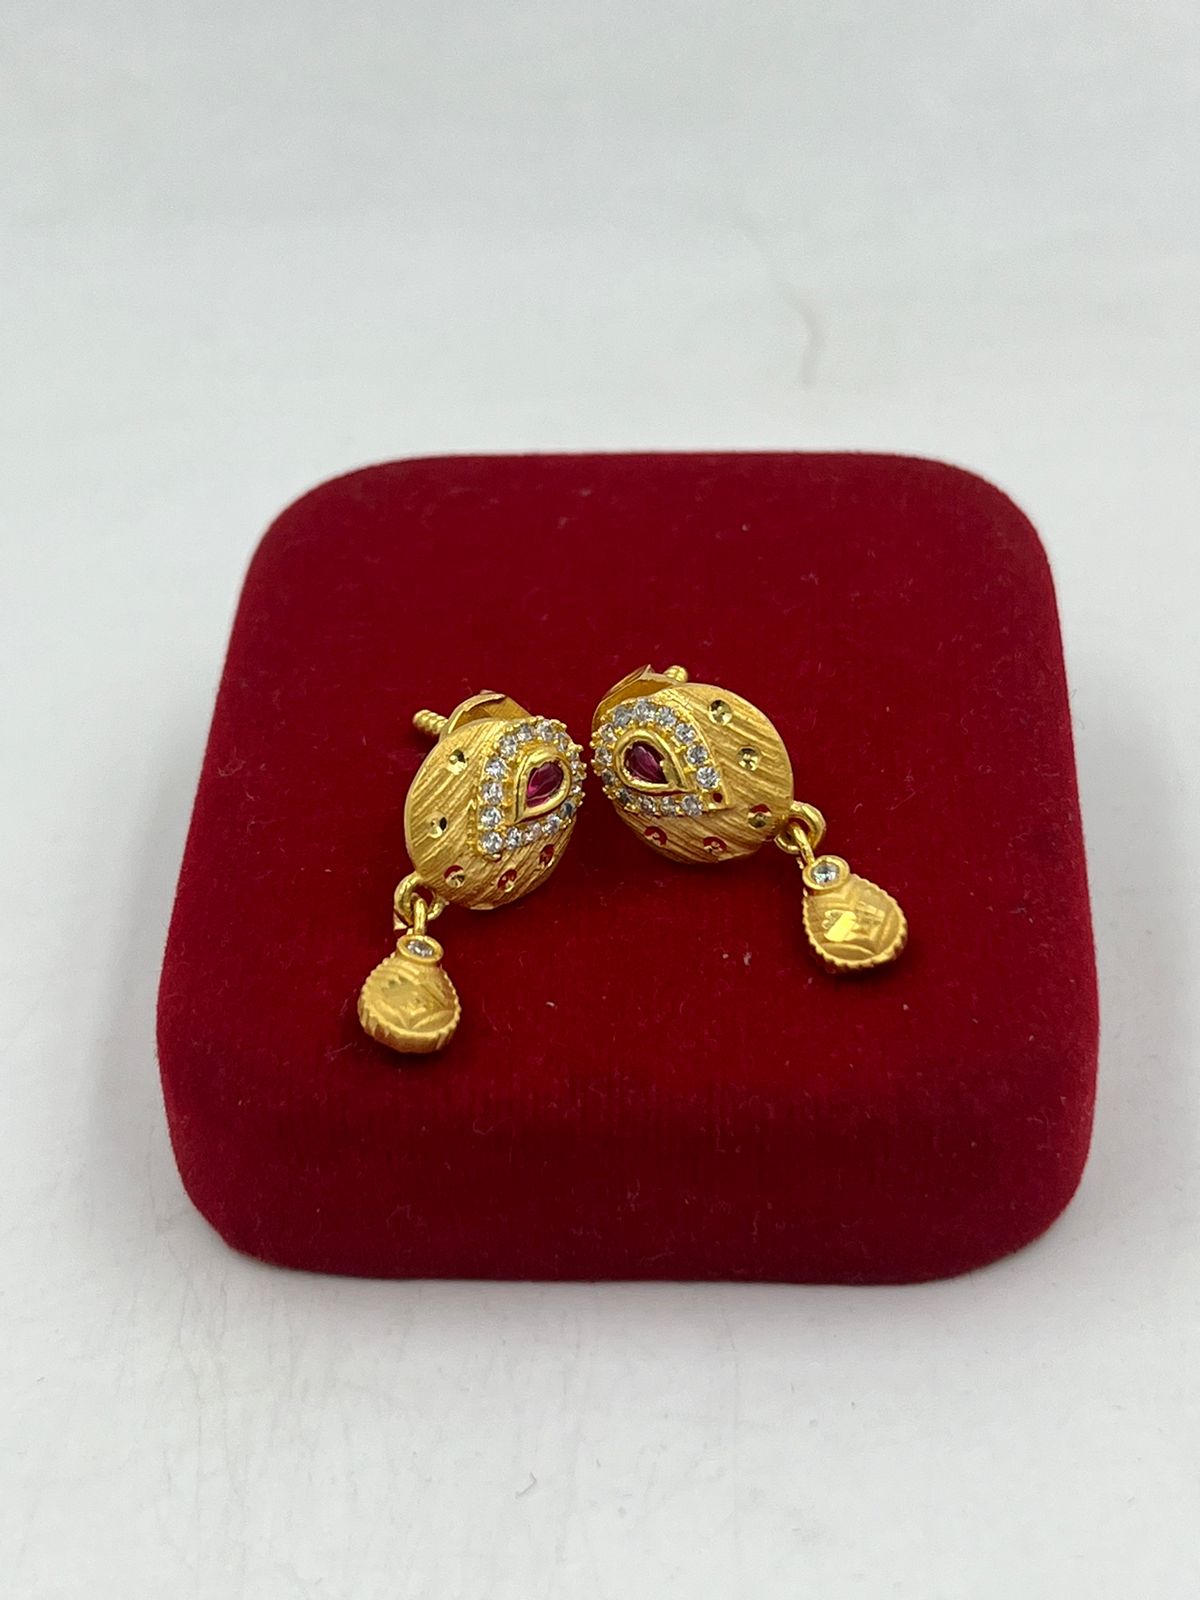 1 Gram Gold Earrings New Design With Price | Designer Earrings |